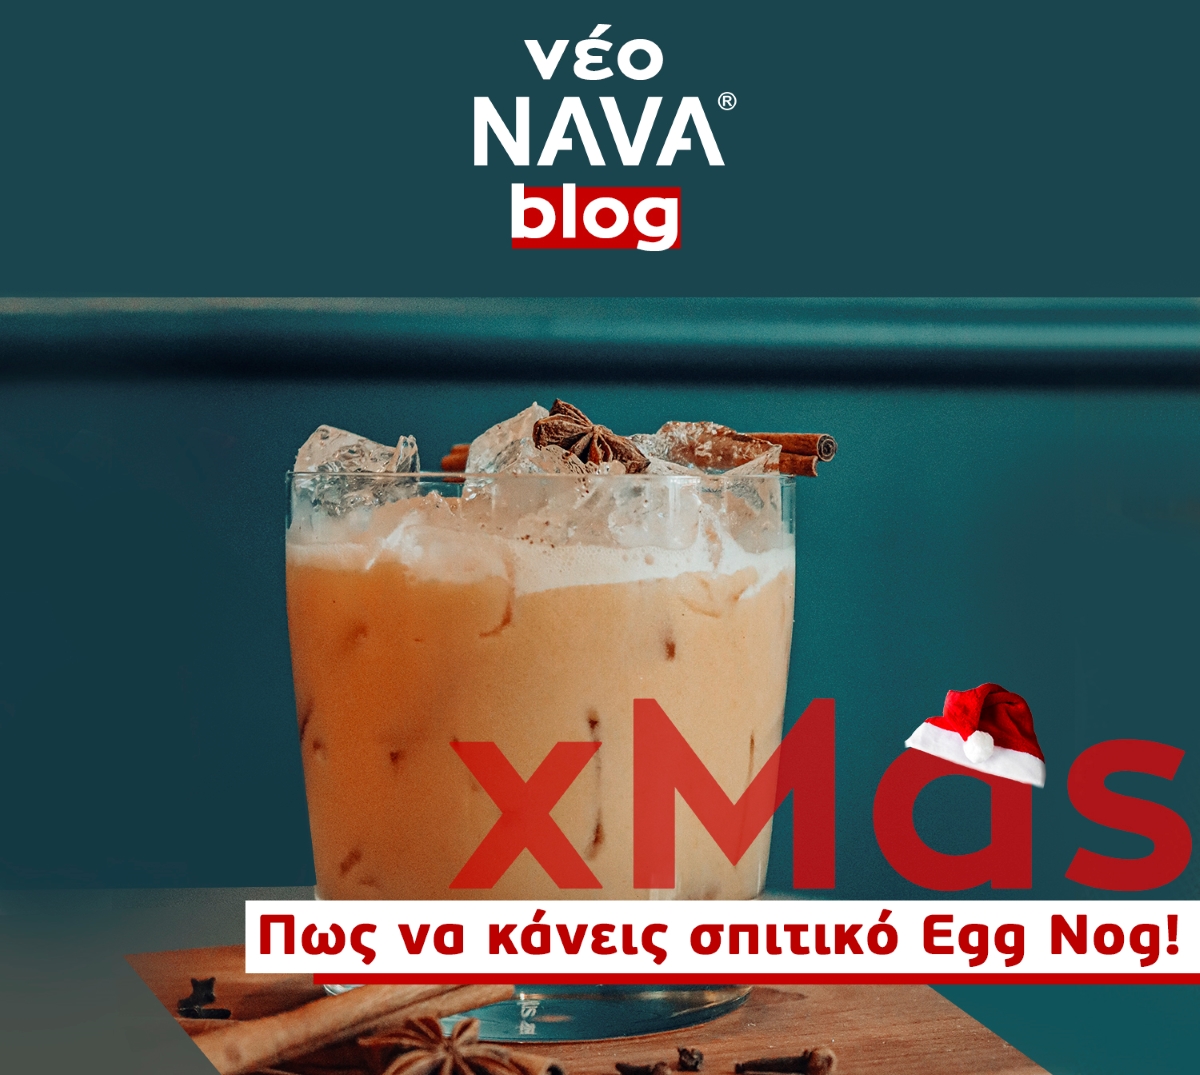 Make your first Egg Nog + 2 classic Christmas recipes